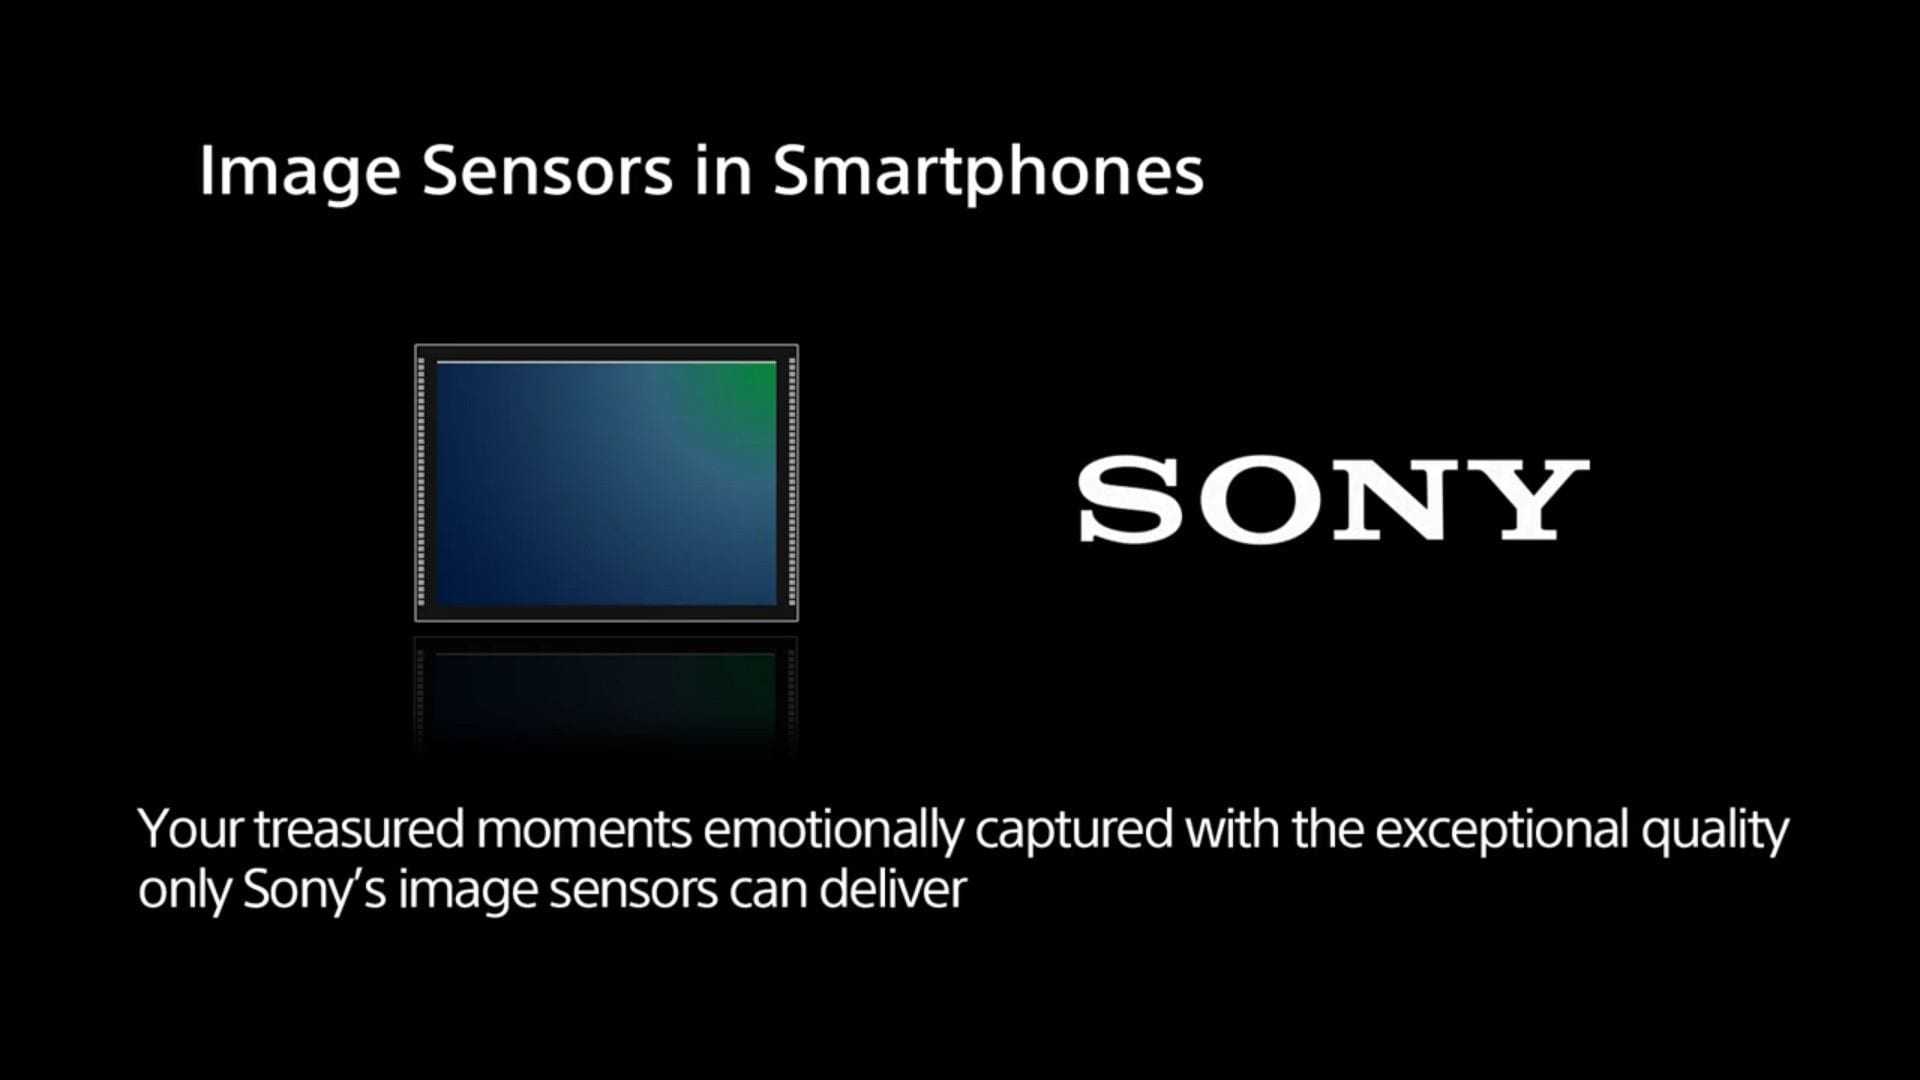 Image sensors + Smartphones